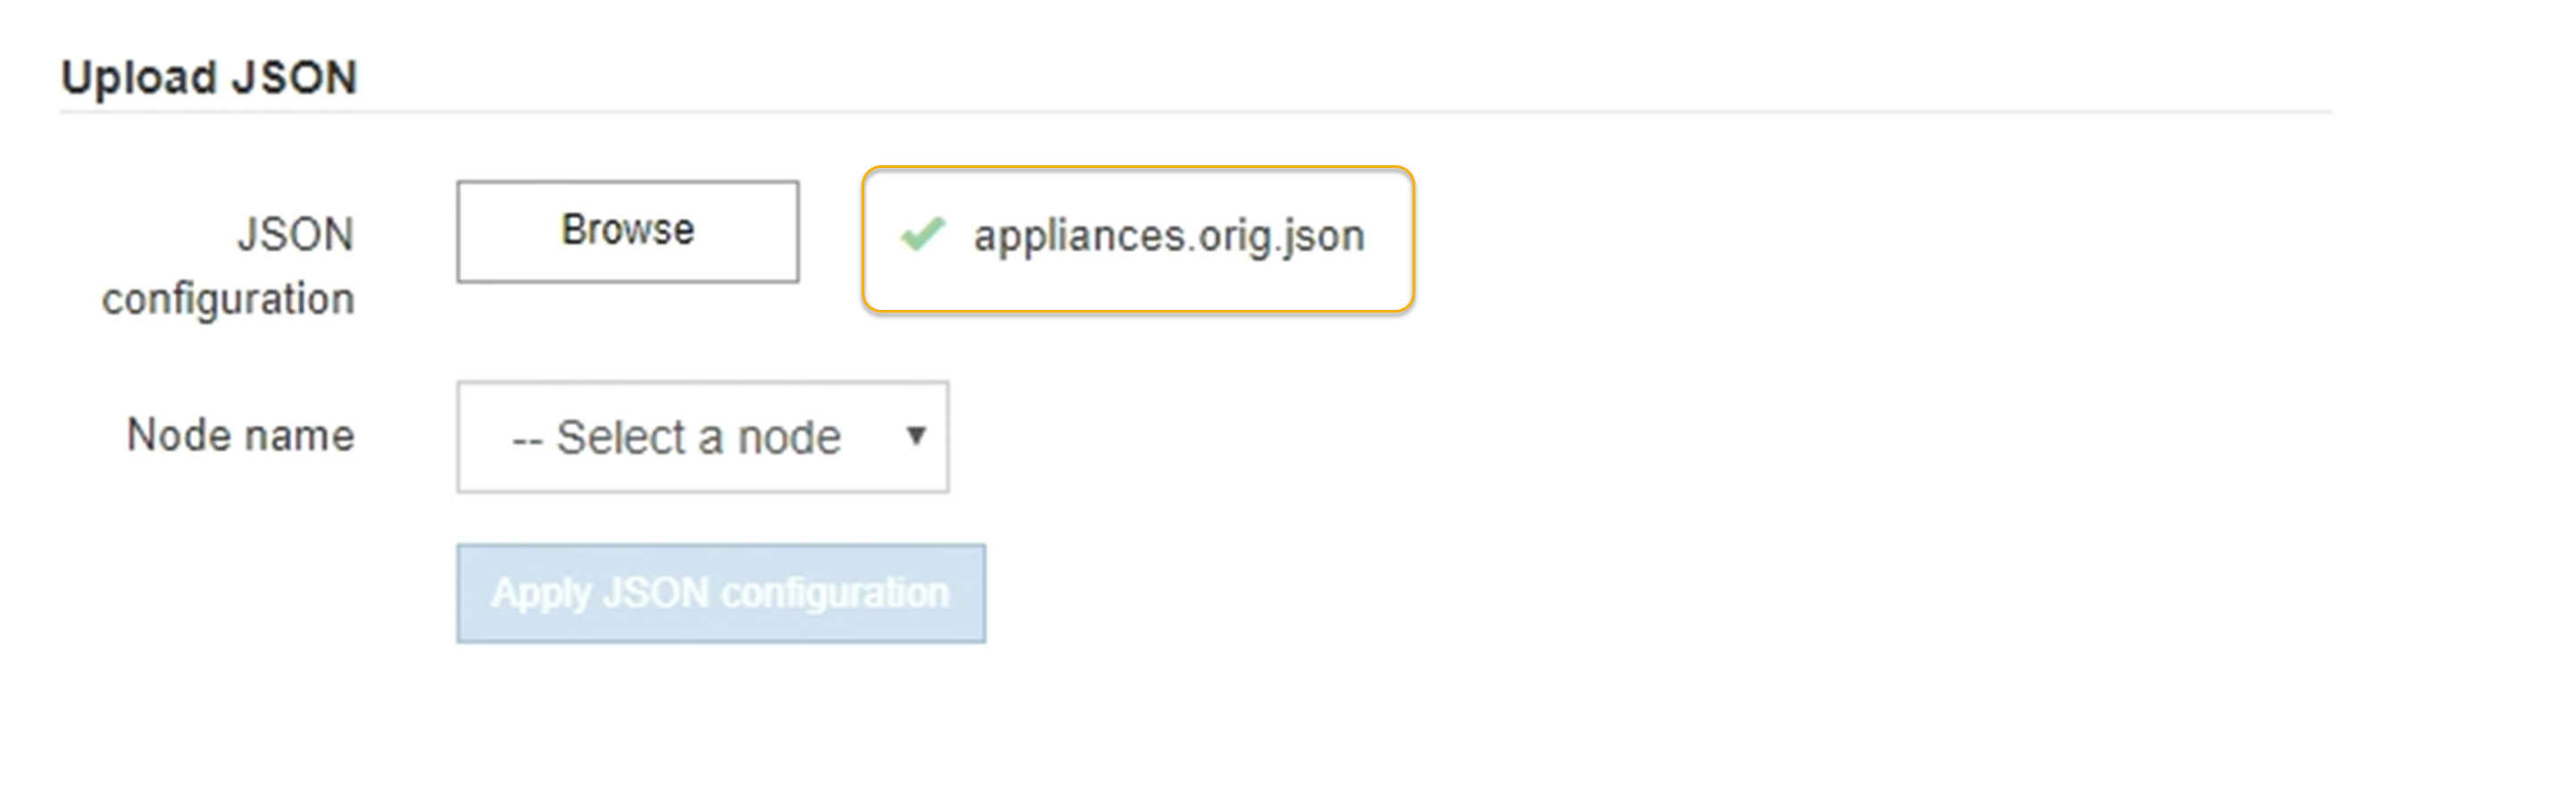 アプライアンス設定の JSON がアップロードされました